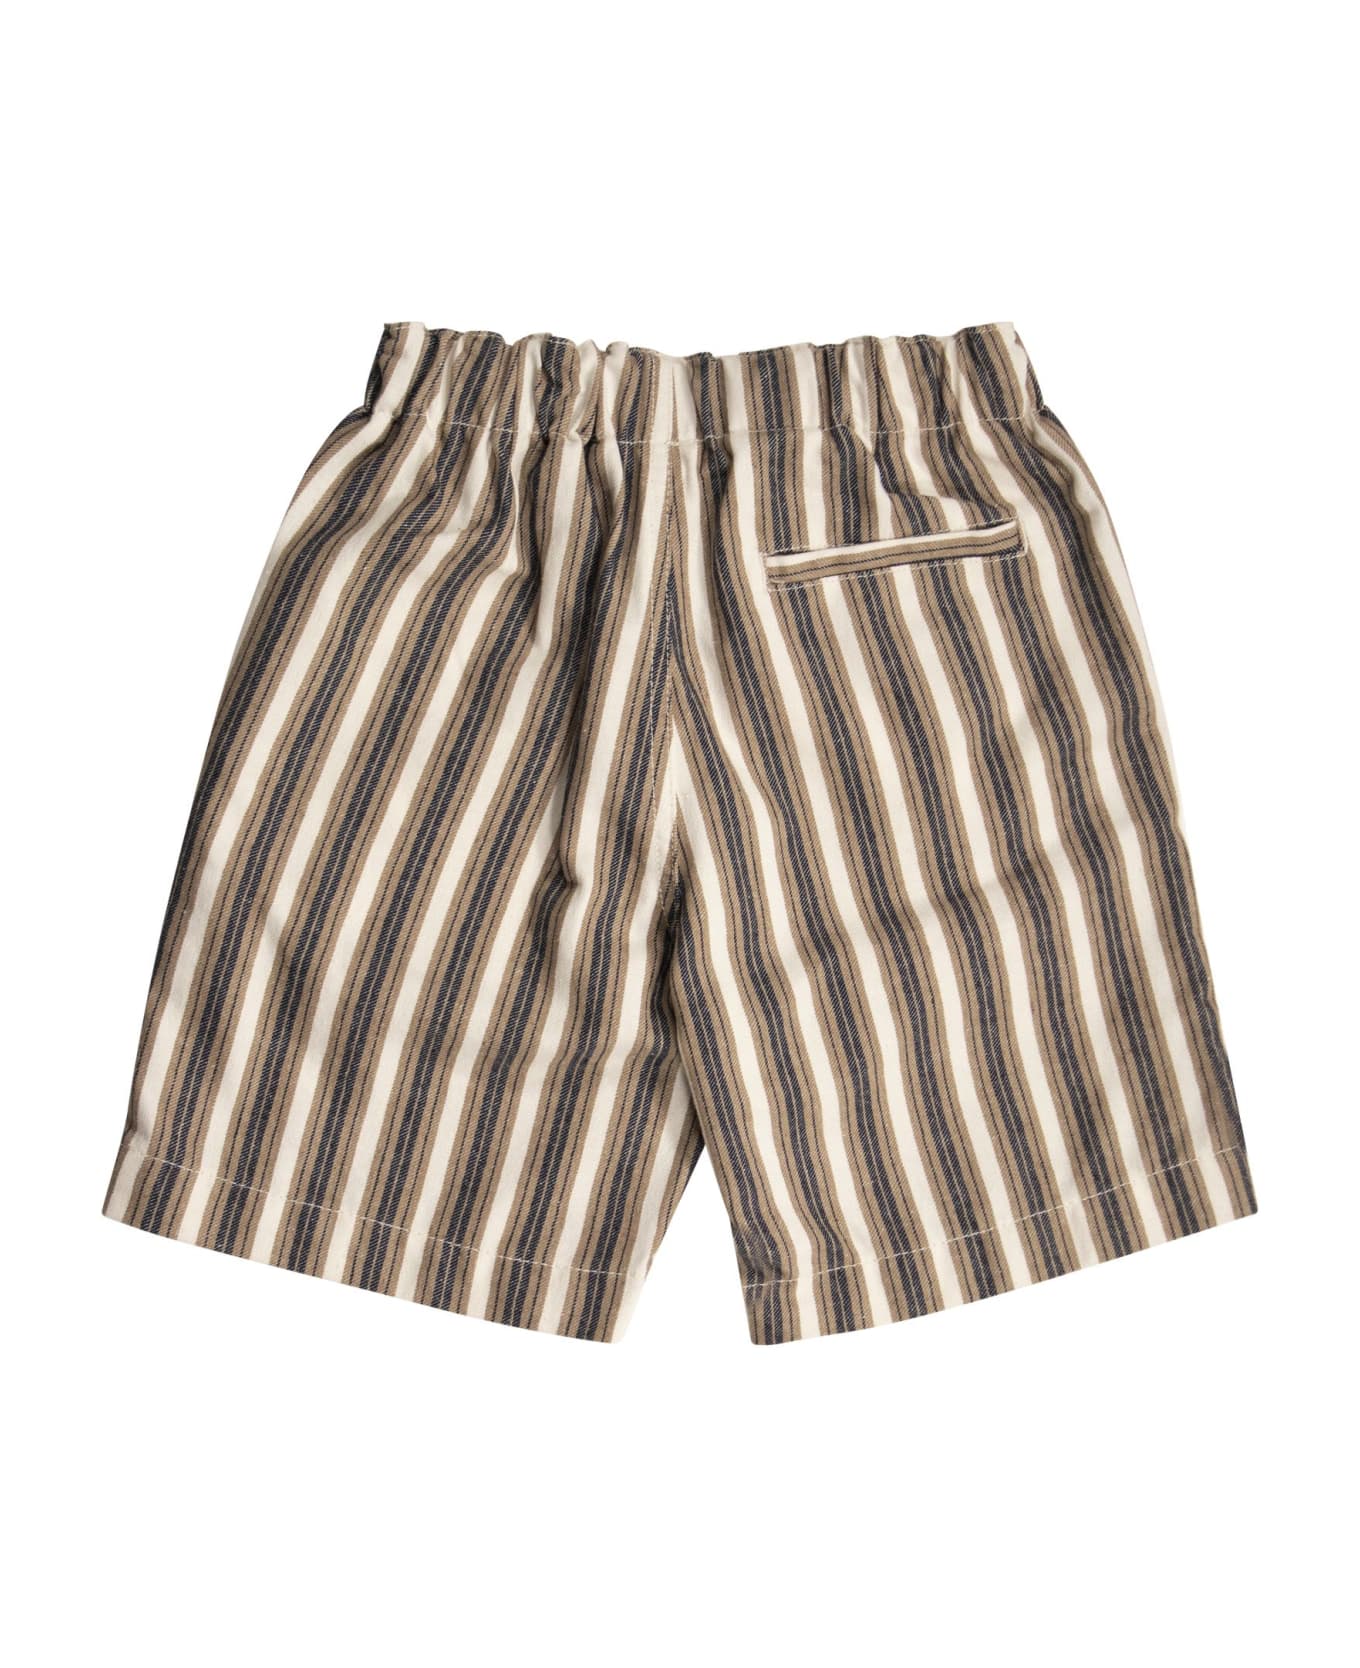 Il Gufo Striped Cotton Bermuda Shorts - Sand ボトムス